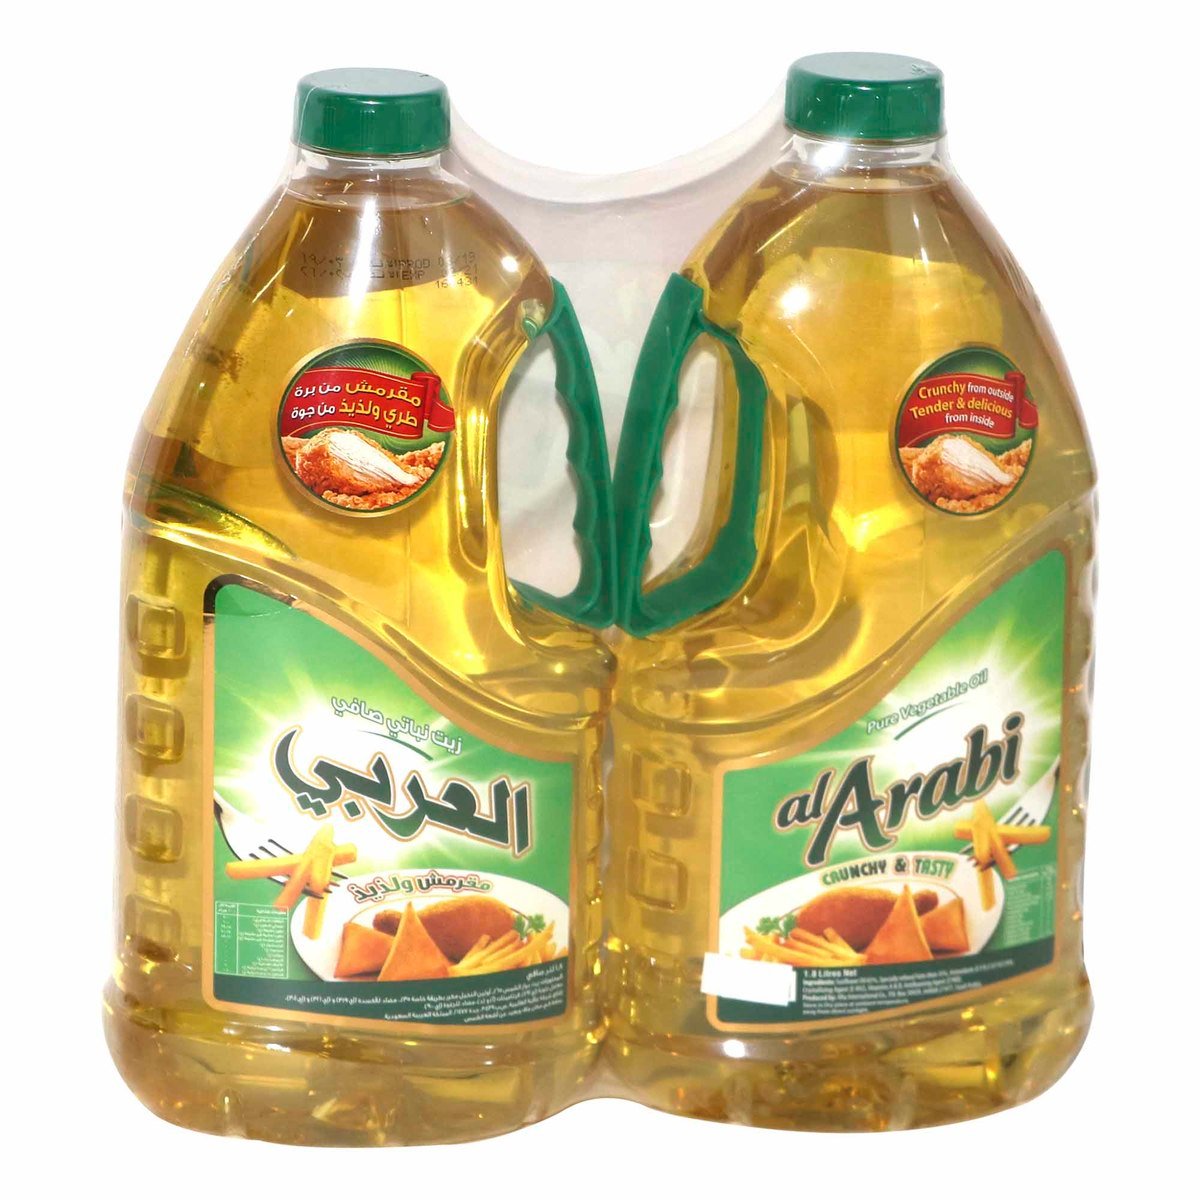 Al Arabi Vegetable Oil 2 x 1.8Litre